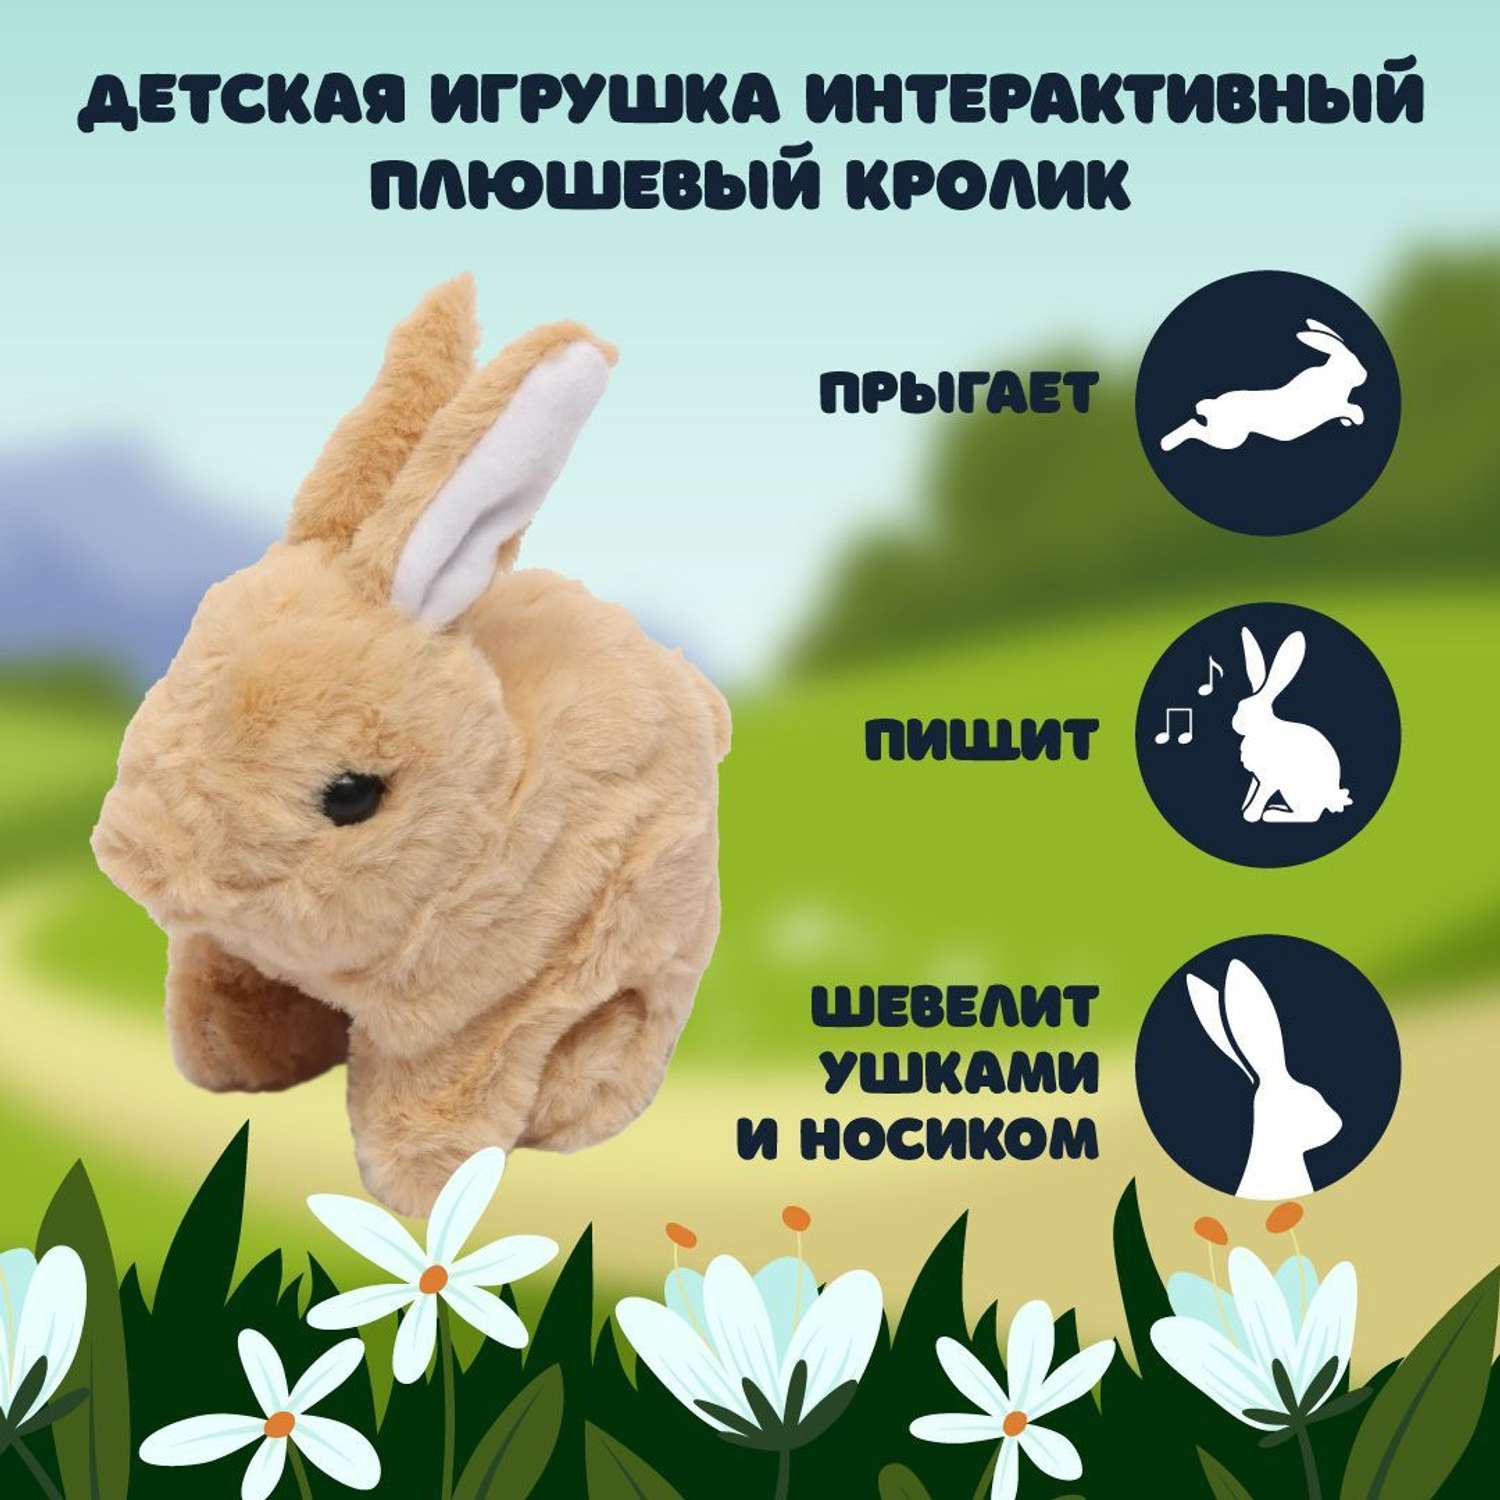 Кролик плюшевый ЦДМ Игрушки интерактивная игрушка для малышей - фото 2